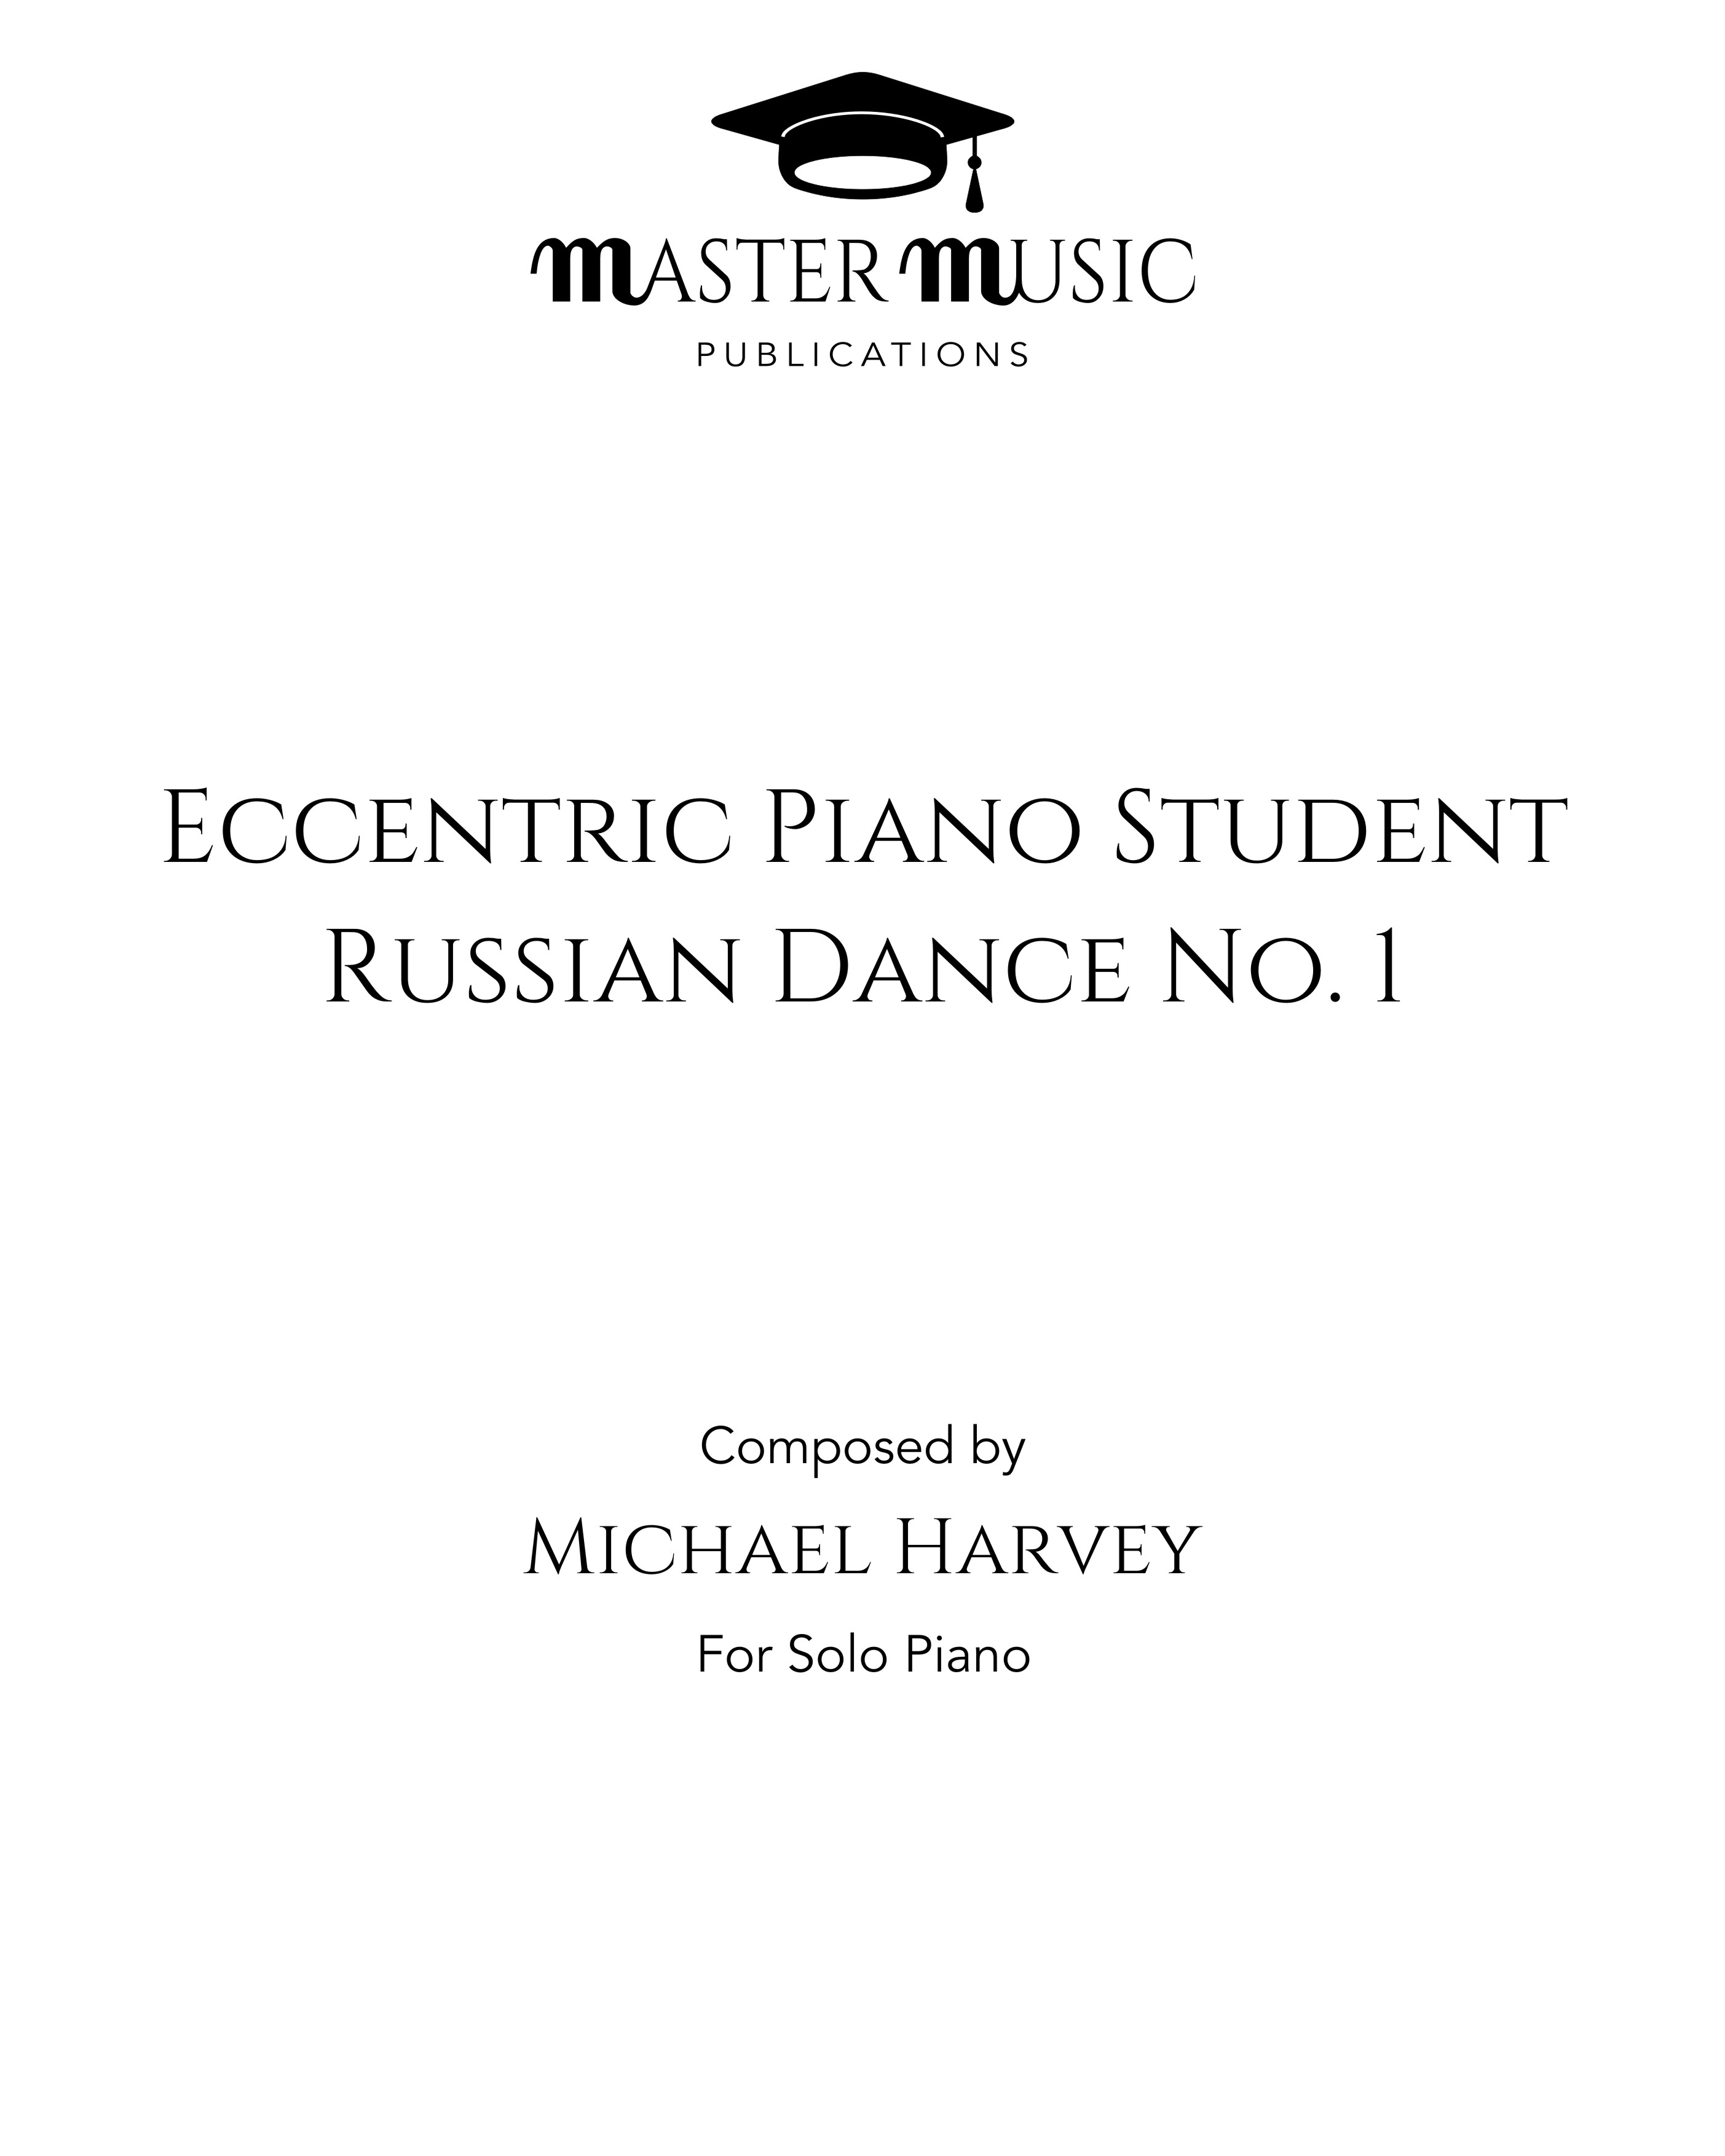 The Eccentric Piano Student (Russian Dance No. 1)